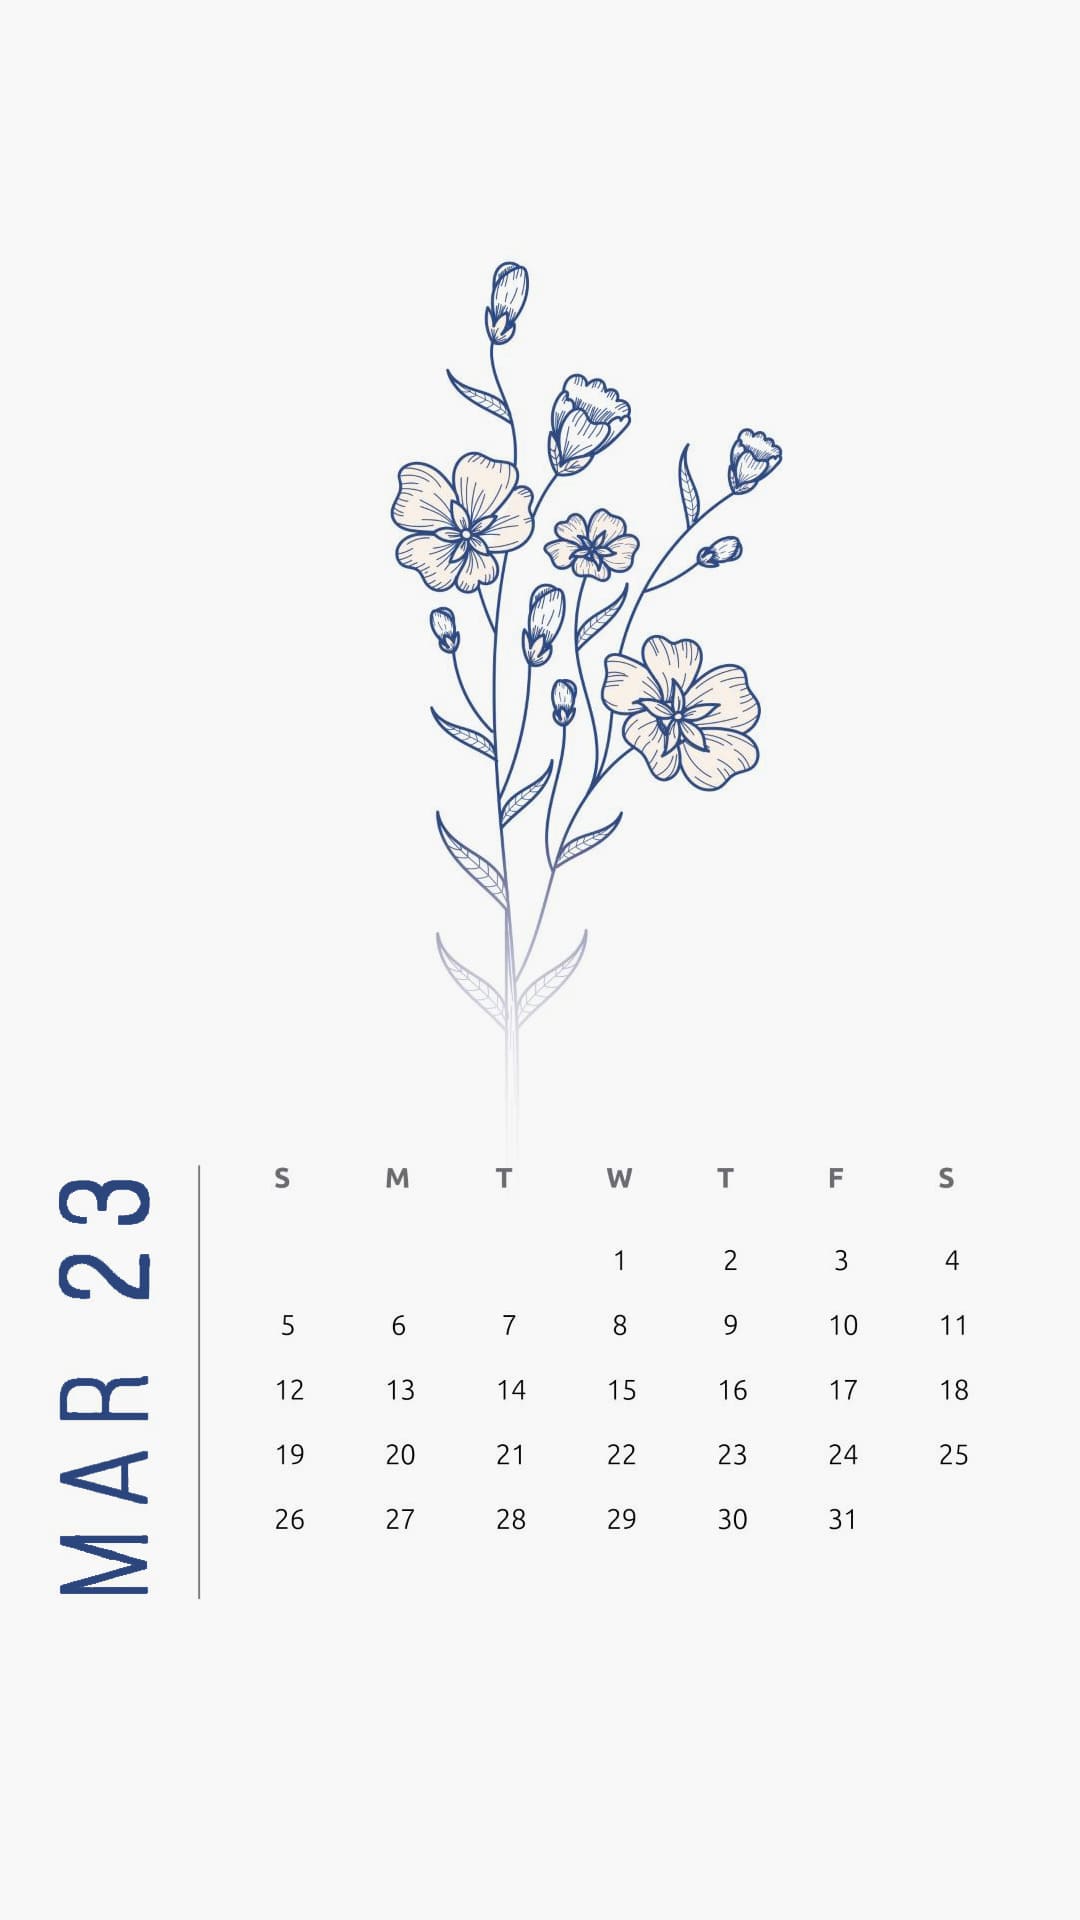 2023 March Calendar Wallpapers